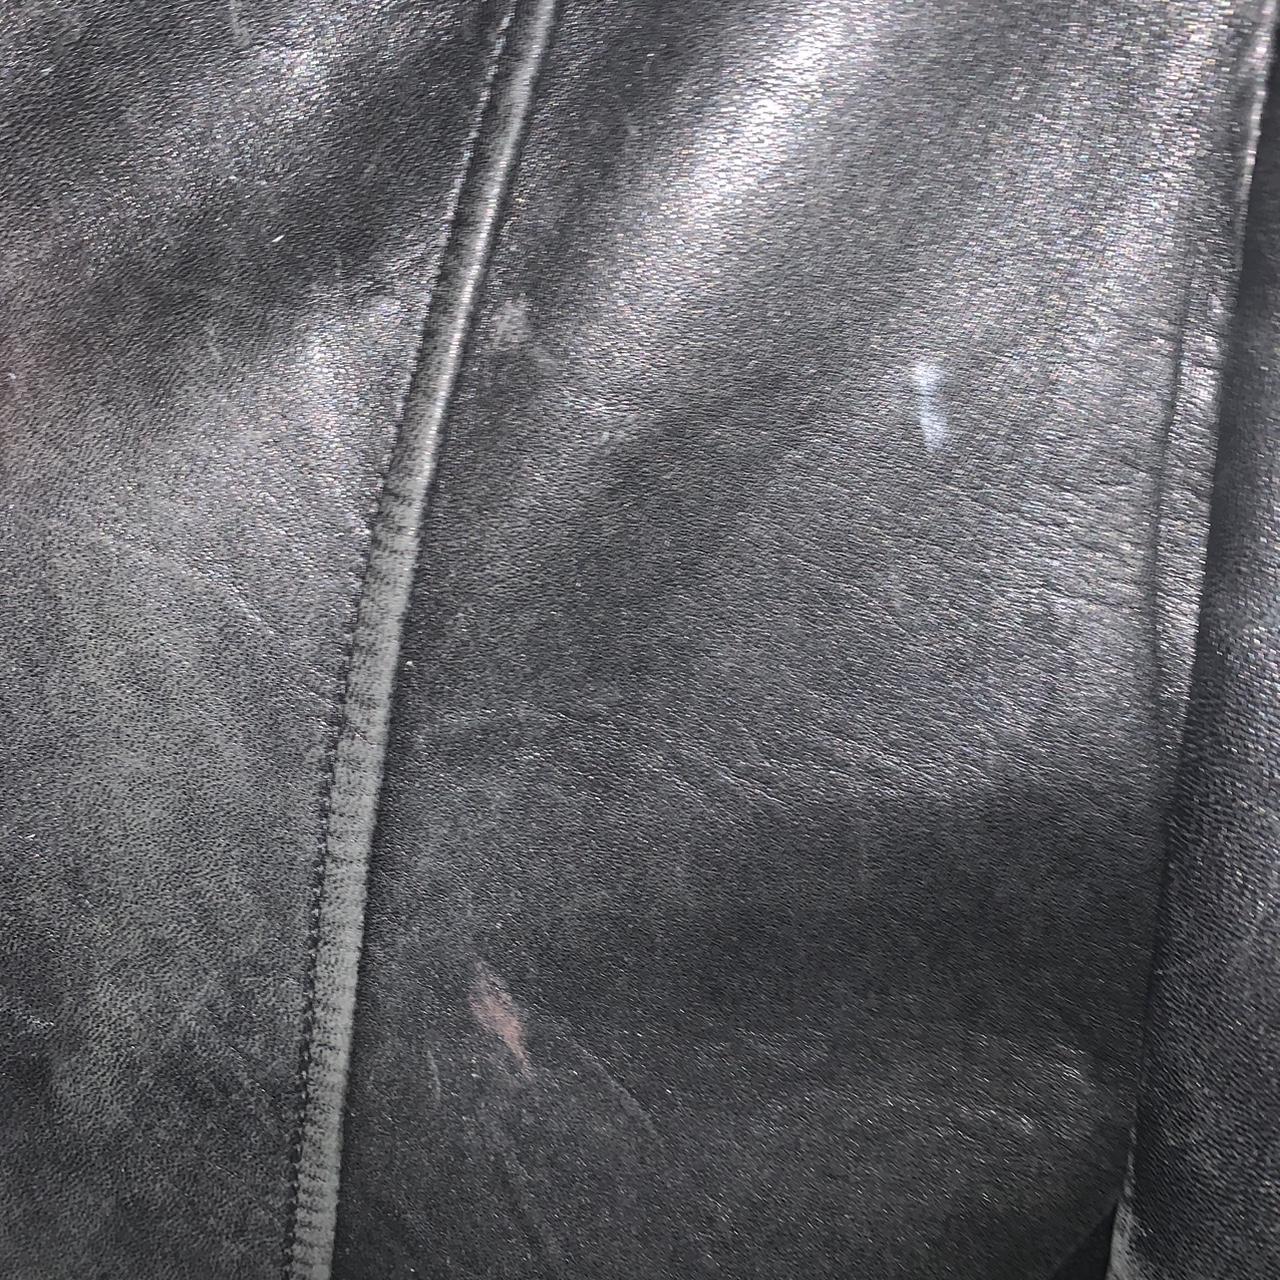 authentic designer black leather jacket! could be... - Depop